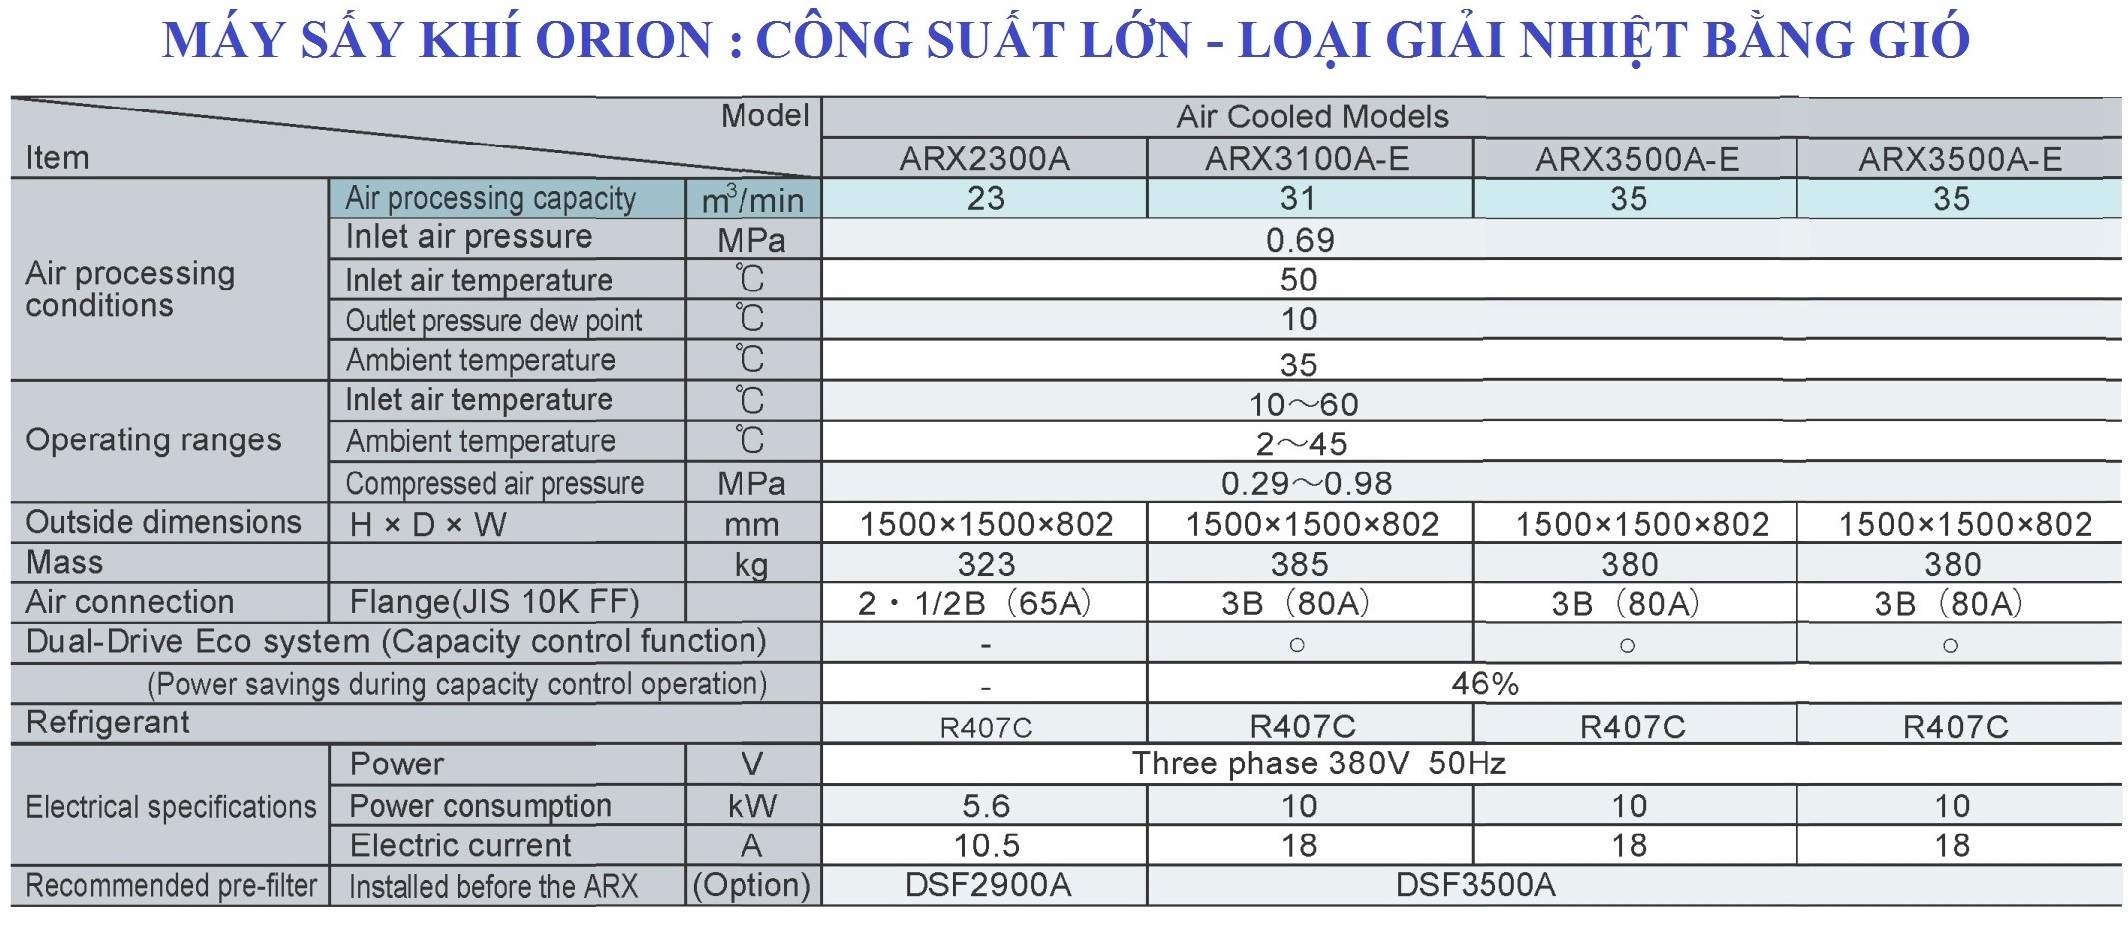 Máy sấy khí Orion, Clean Air System - Nhật Bản | Công suất lớn giải nhiệt bằng gió